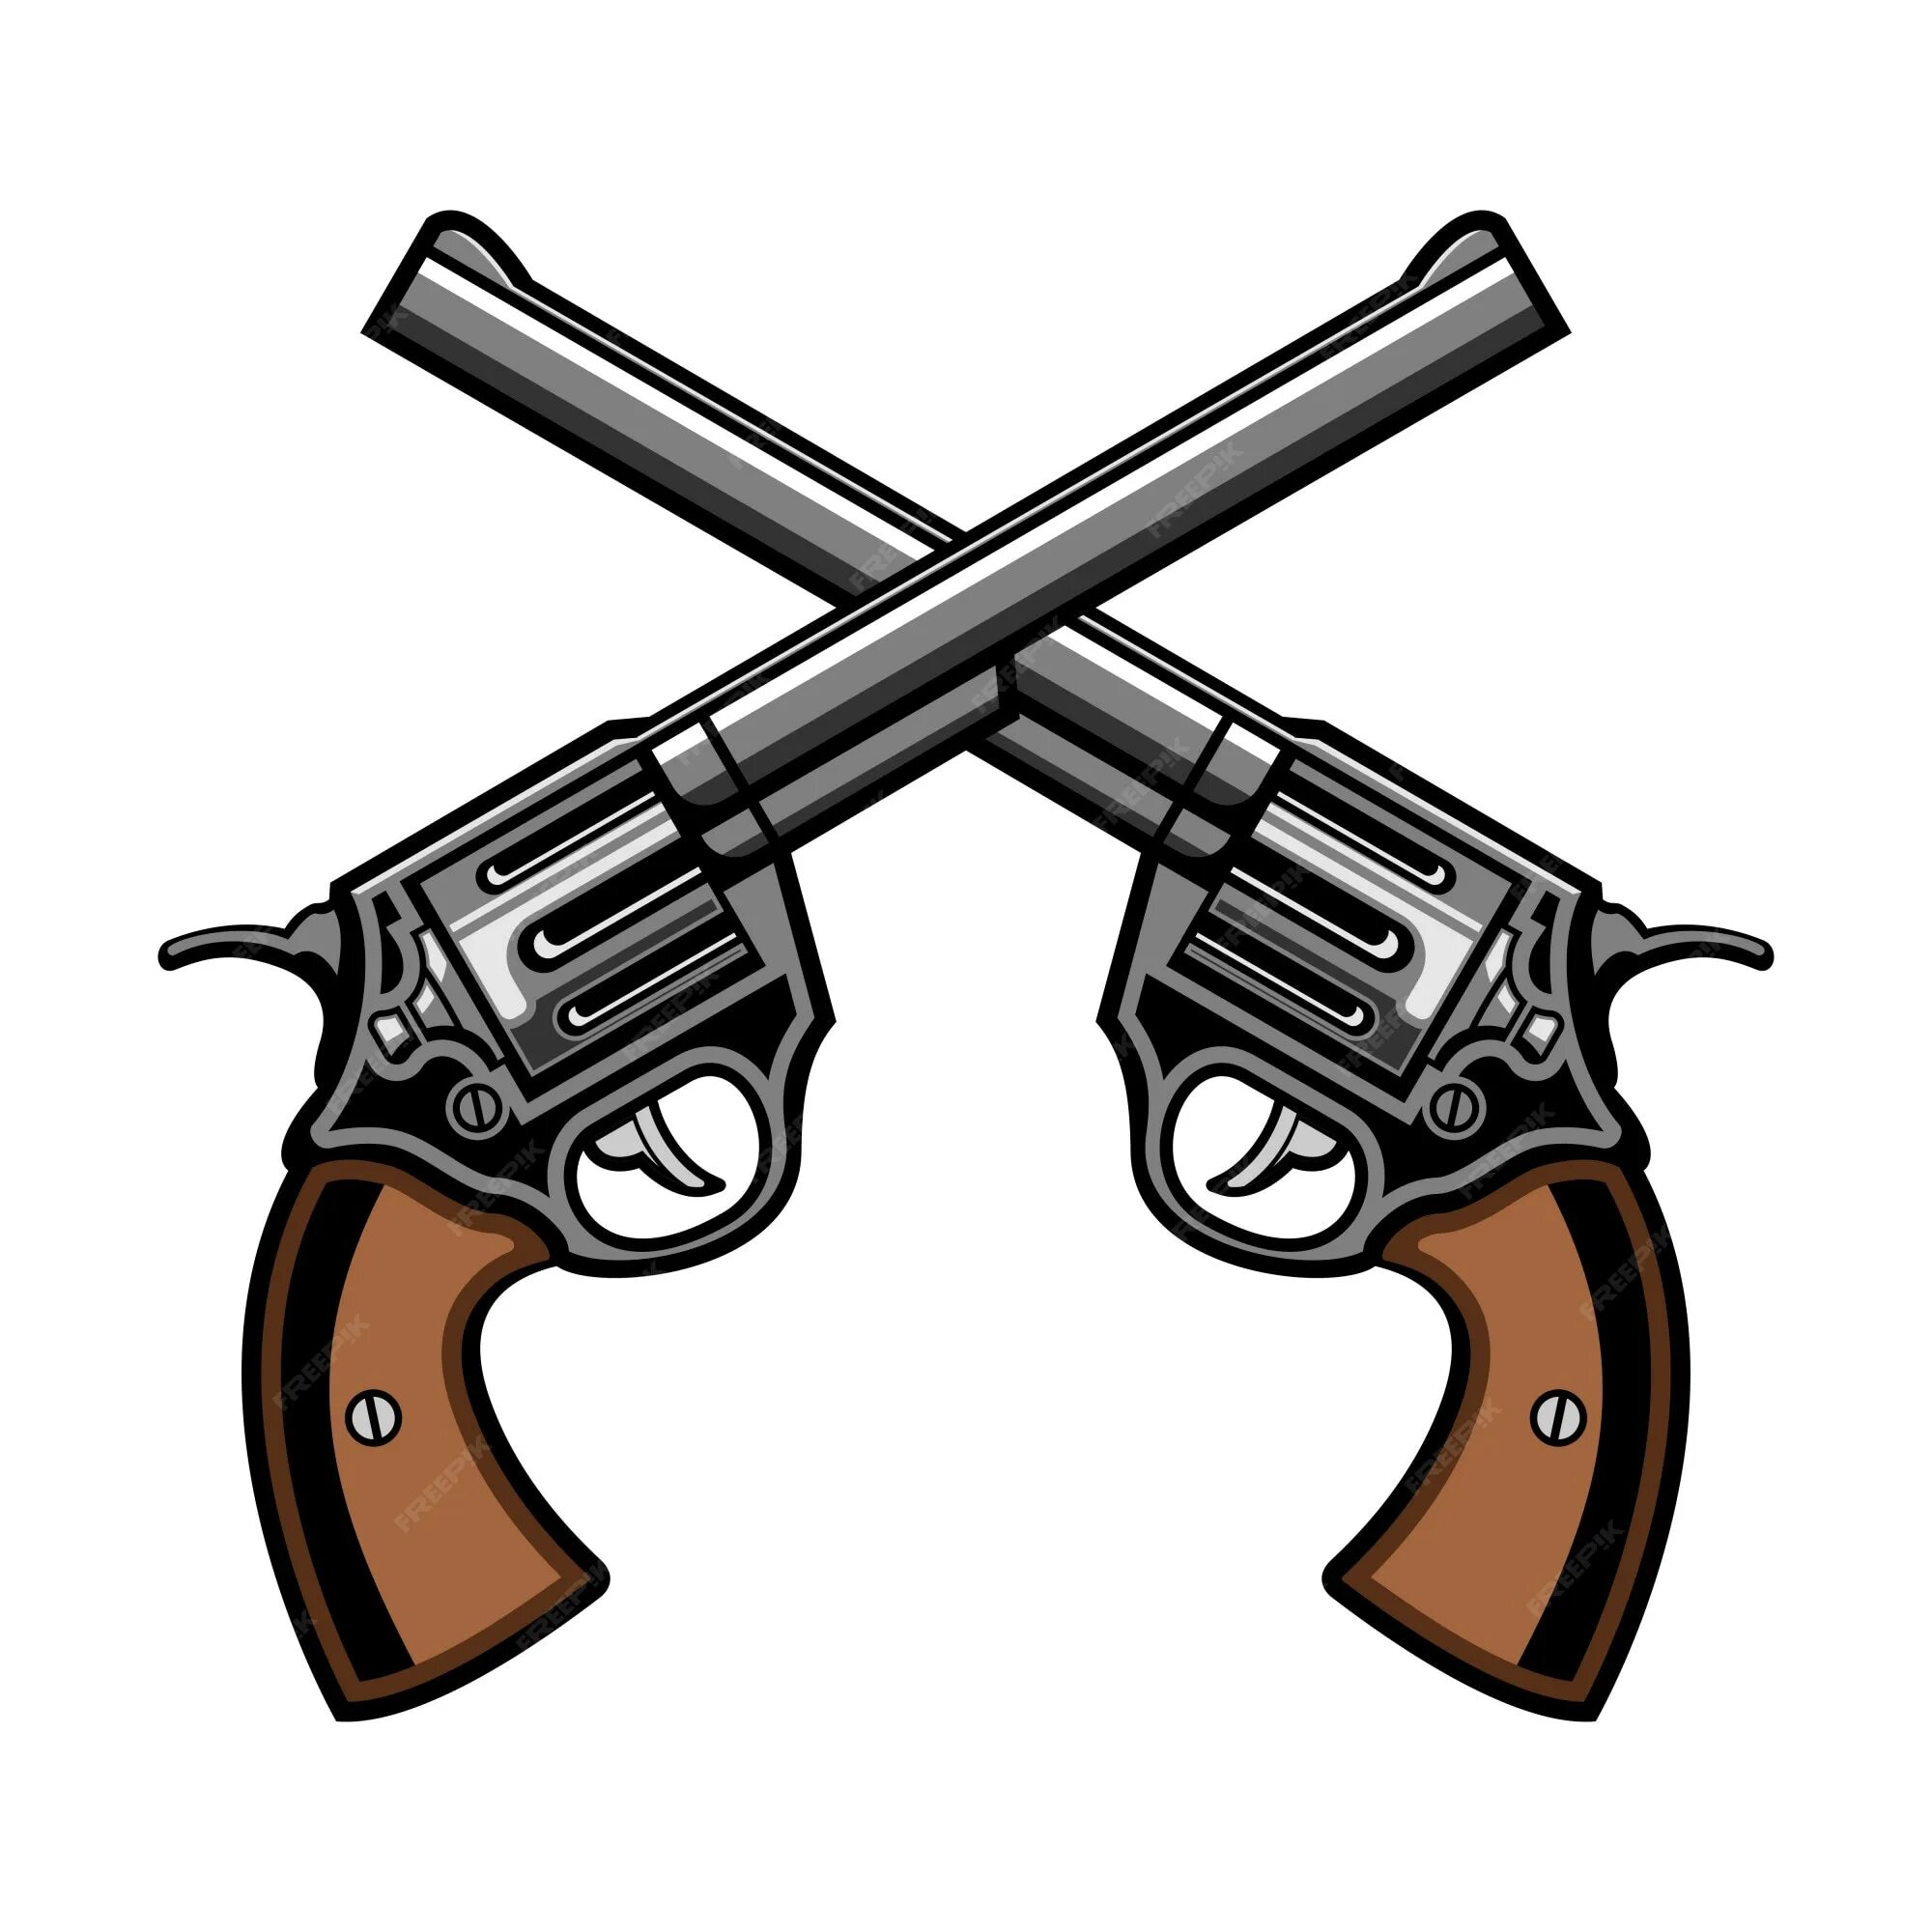 Ii guns. Перекрещенные револьверы. Скрещенные пистолеты. 2 Скрещенных пистолета. Два перекрещенных пистолета.